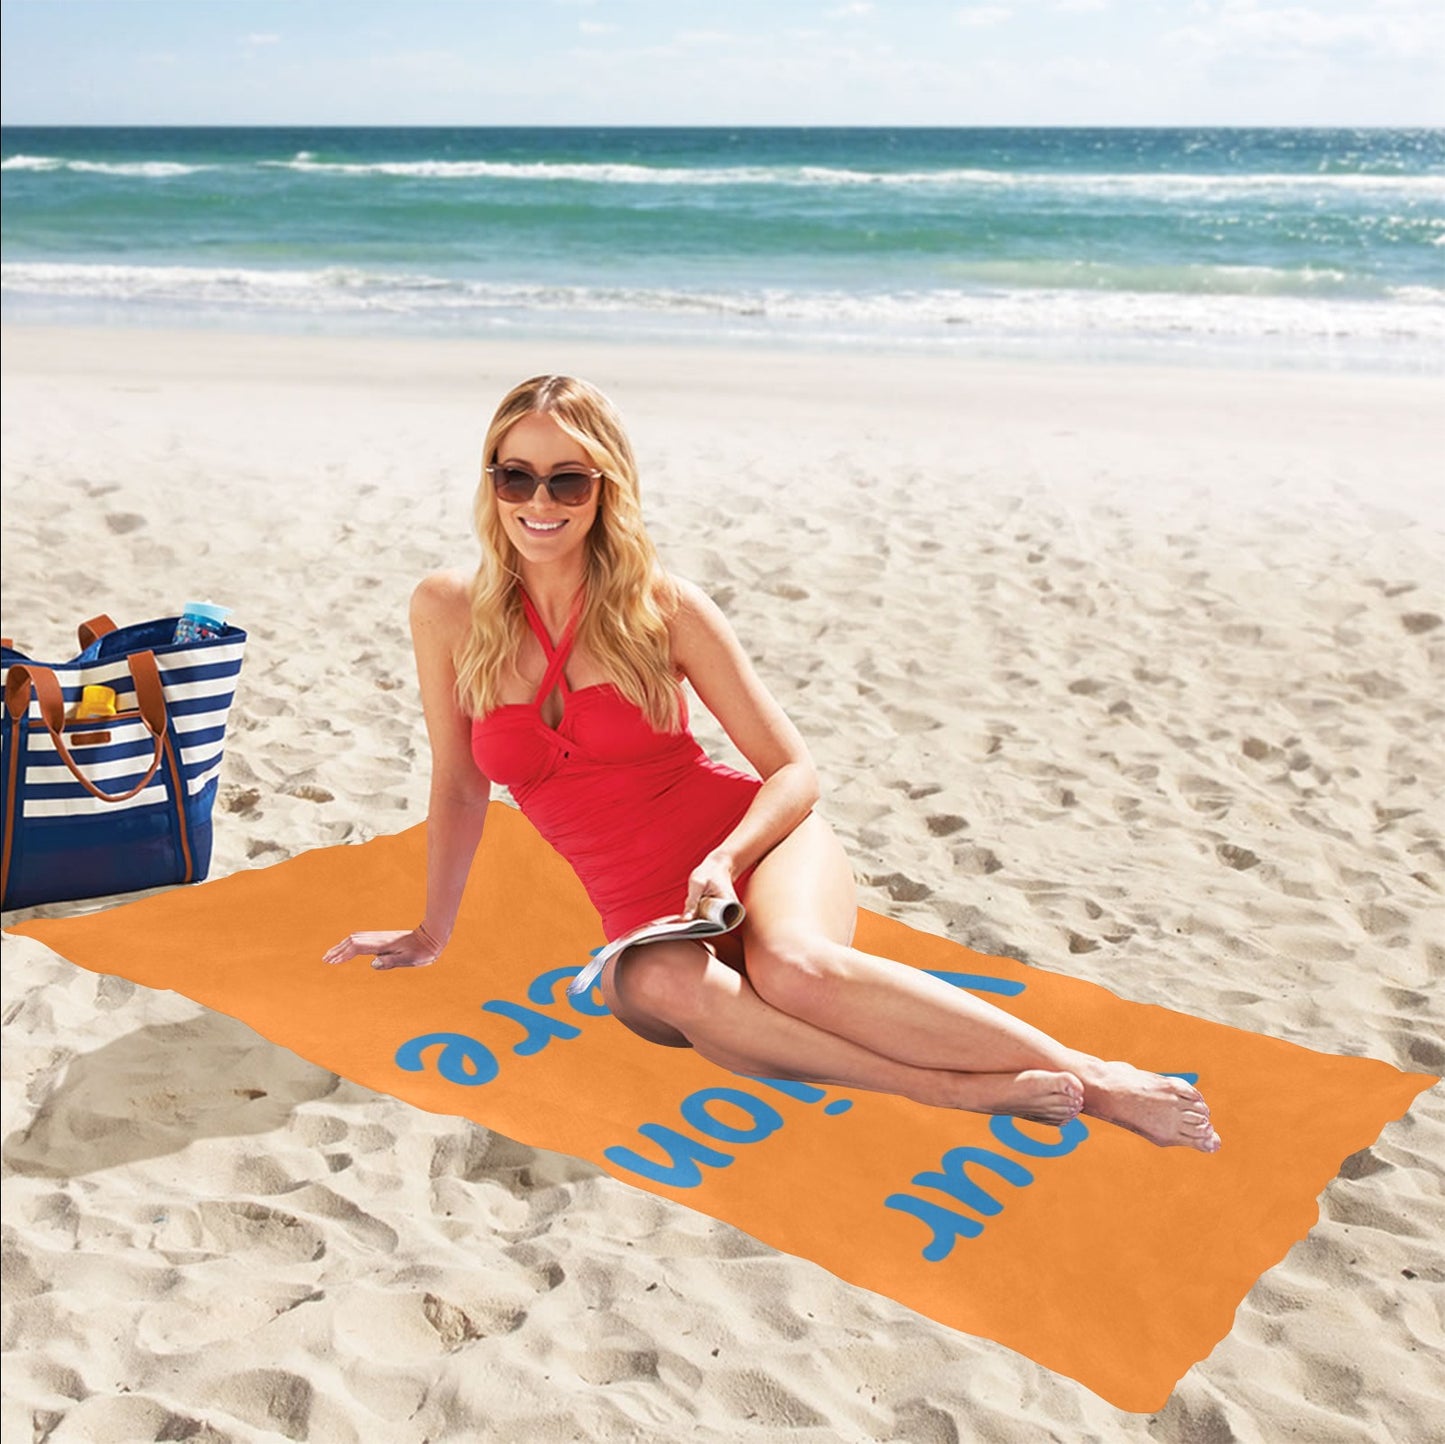 Personalized Towel Beach Towel 30x60"